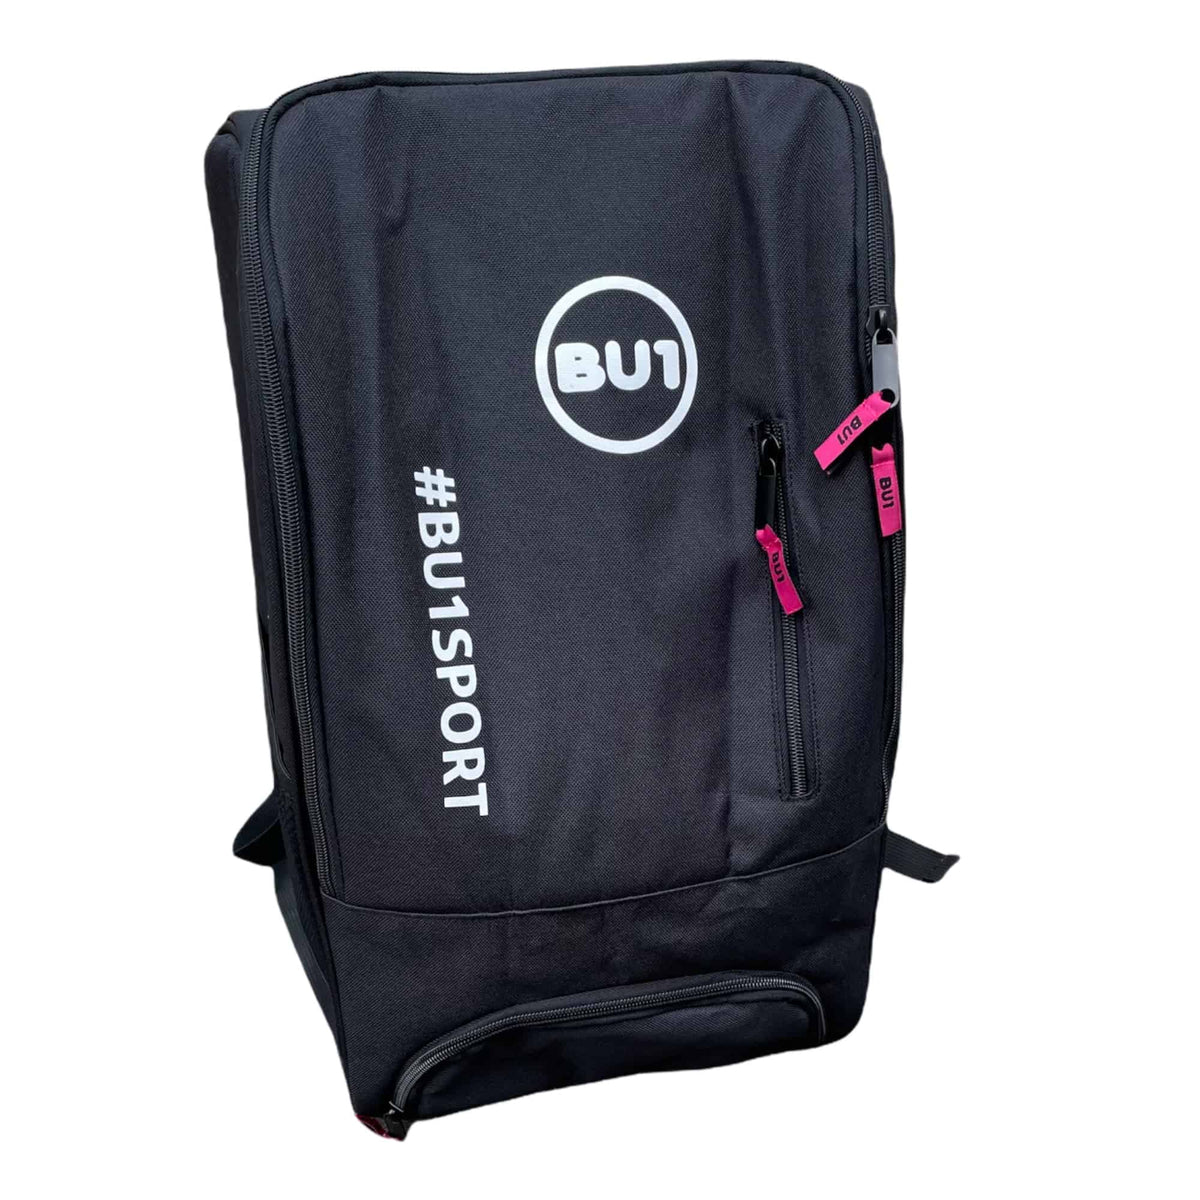 BU1 sportovní batoh černý